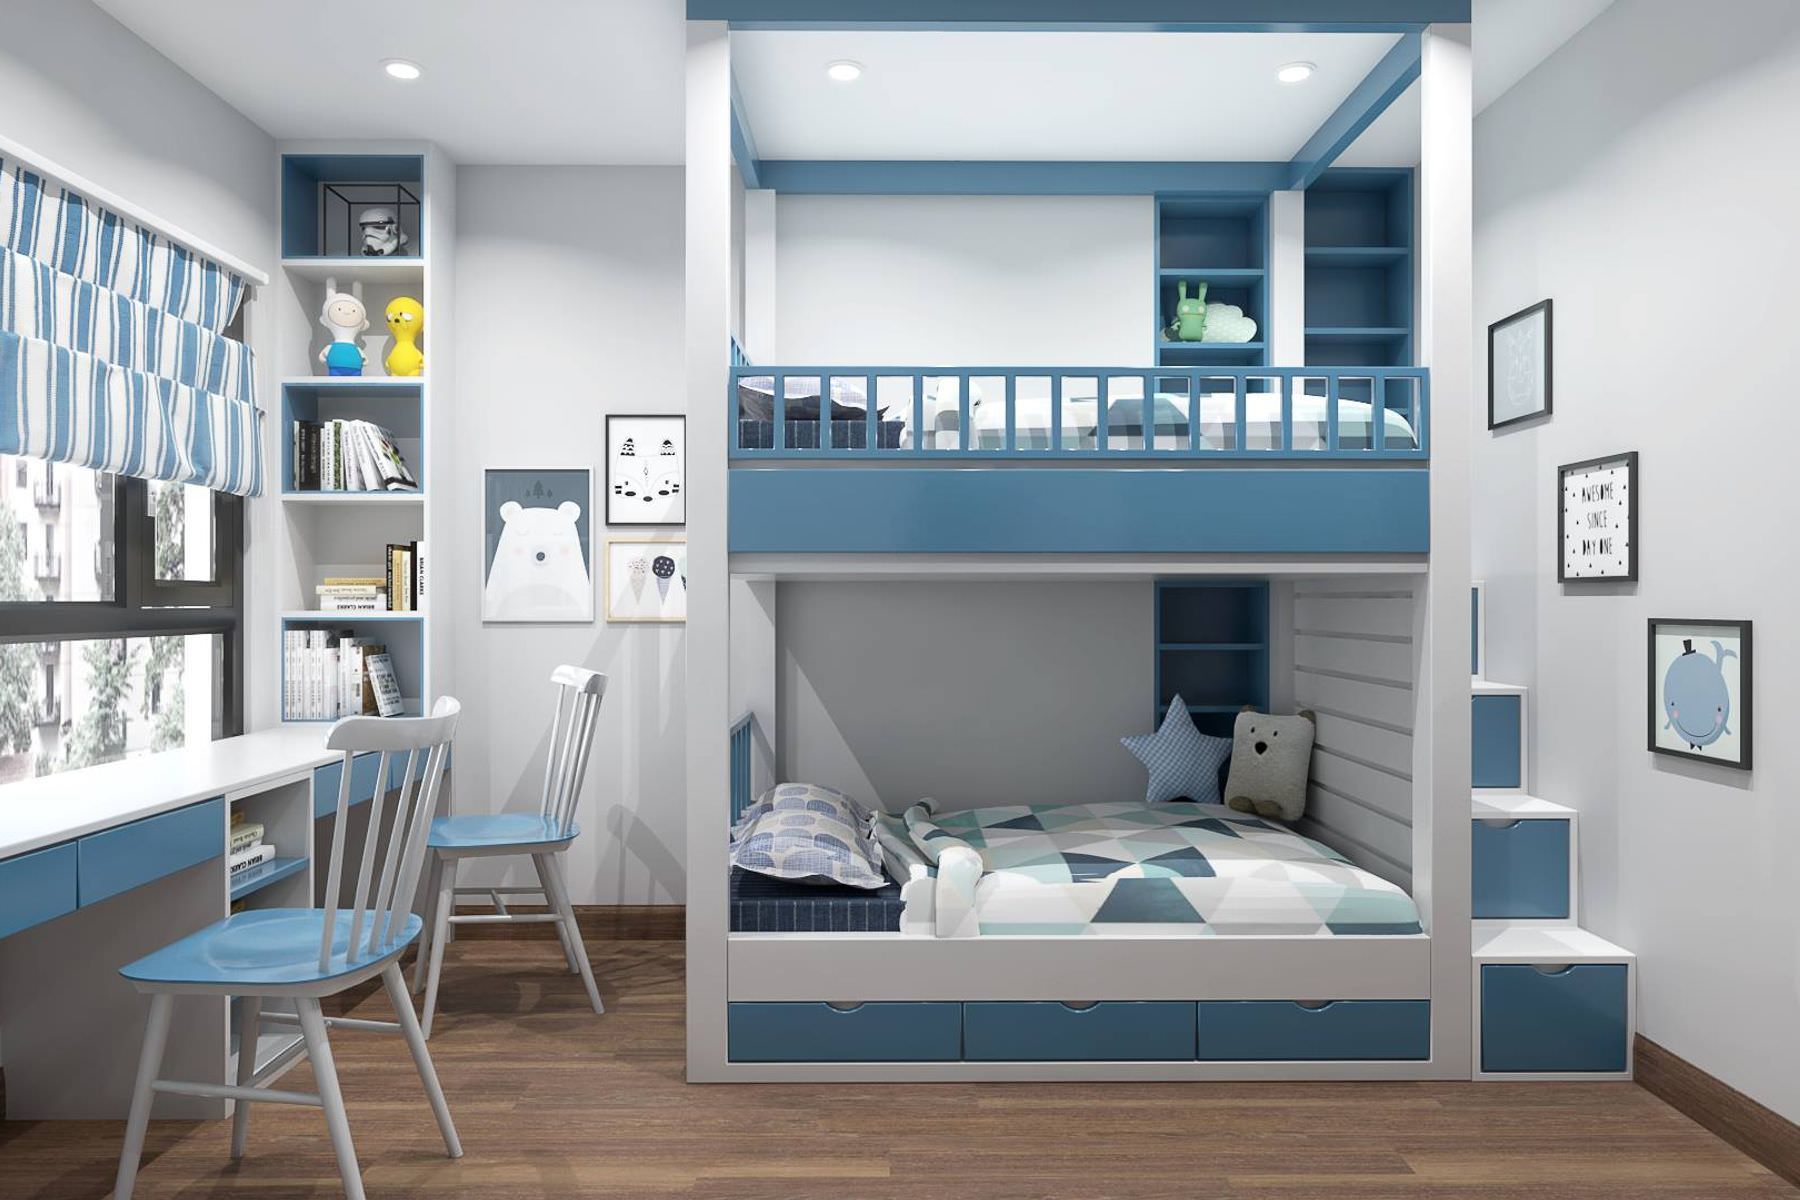 Thiết kế phòng ngủ cho bé trai với bộ giường tầng hiện đại có bậc thang hộc kéo đi lên có thể đựng đồ